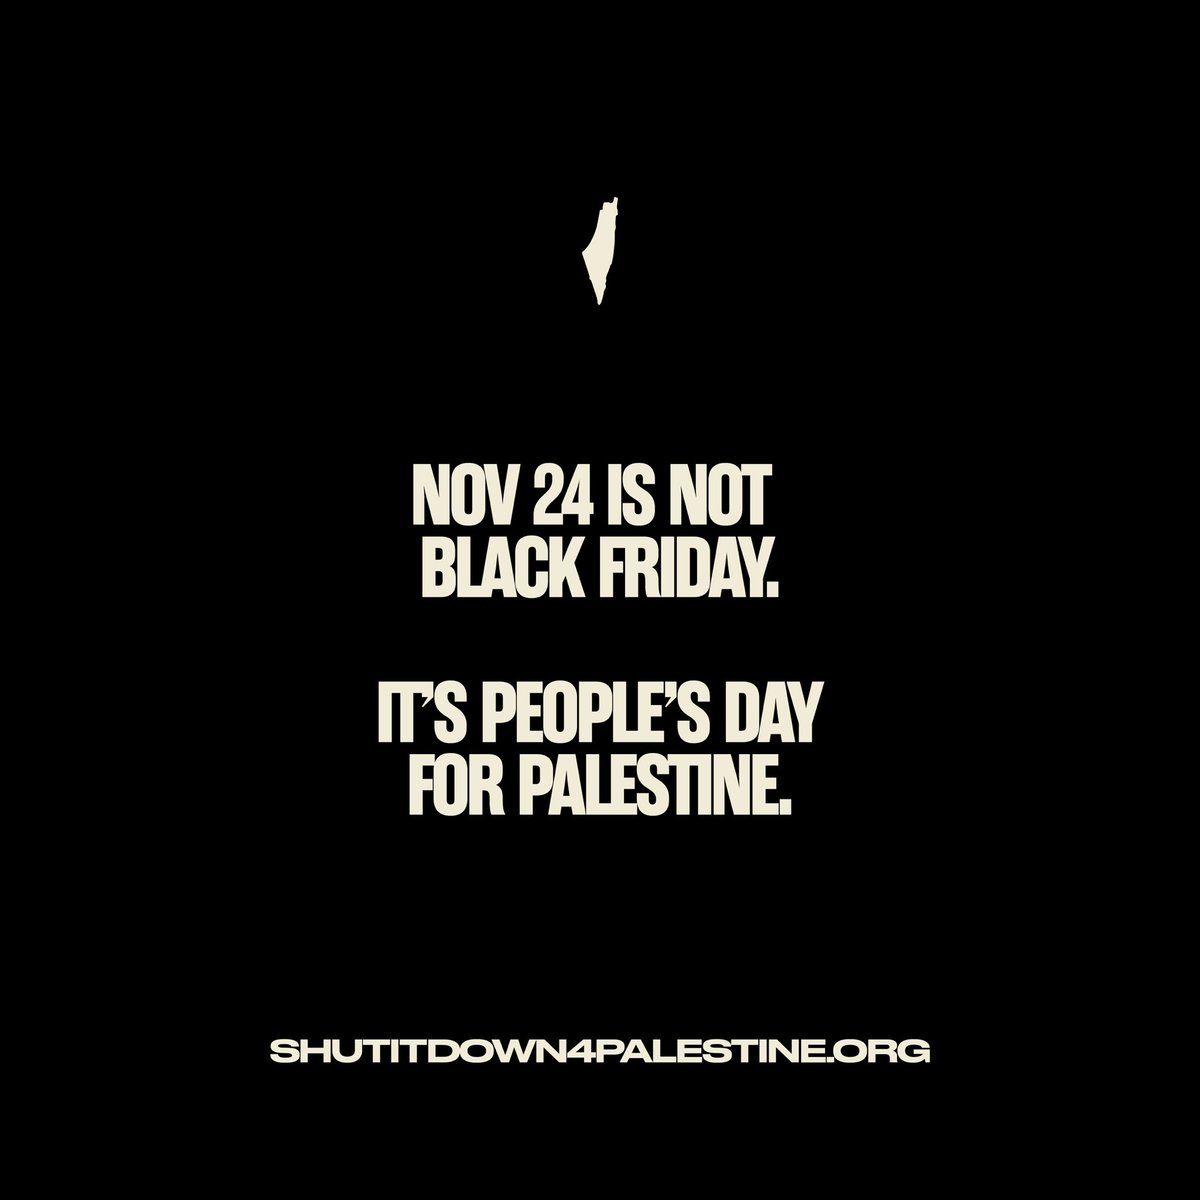 #ShutItDown4Palestine #shutItDownForPalestine #capitalism #capitalismsucks
#BoycottIsrael #boycottisraelbrands #BoycottIsraelProducts